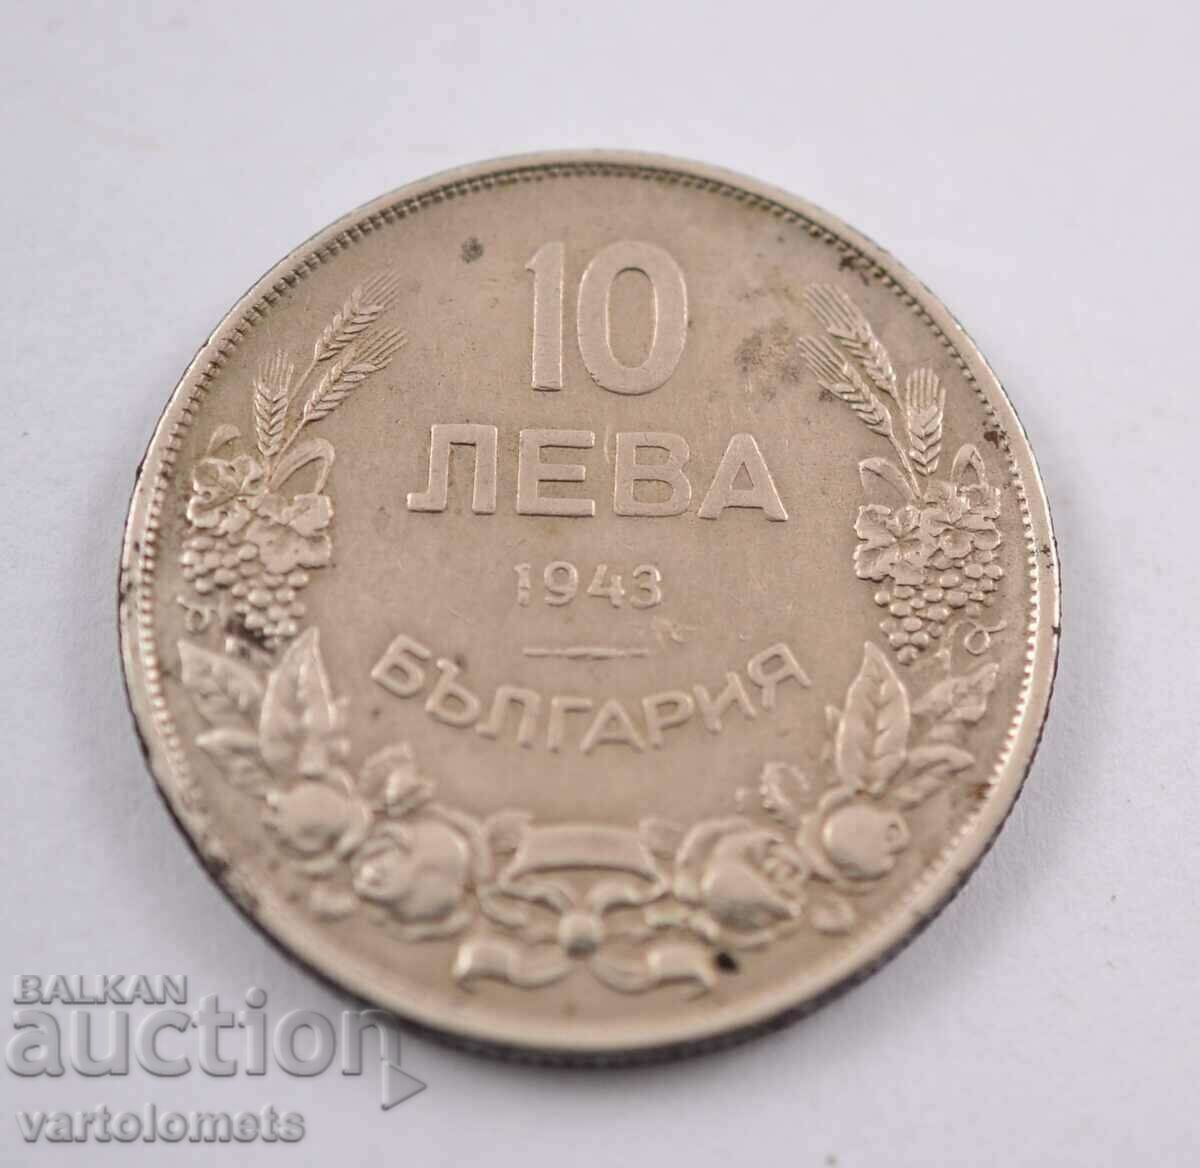 10 Лева 1943  - България